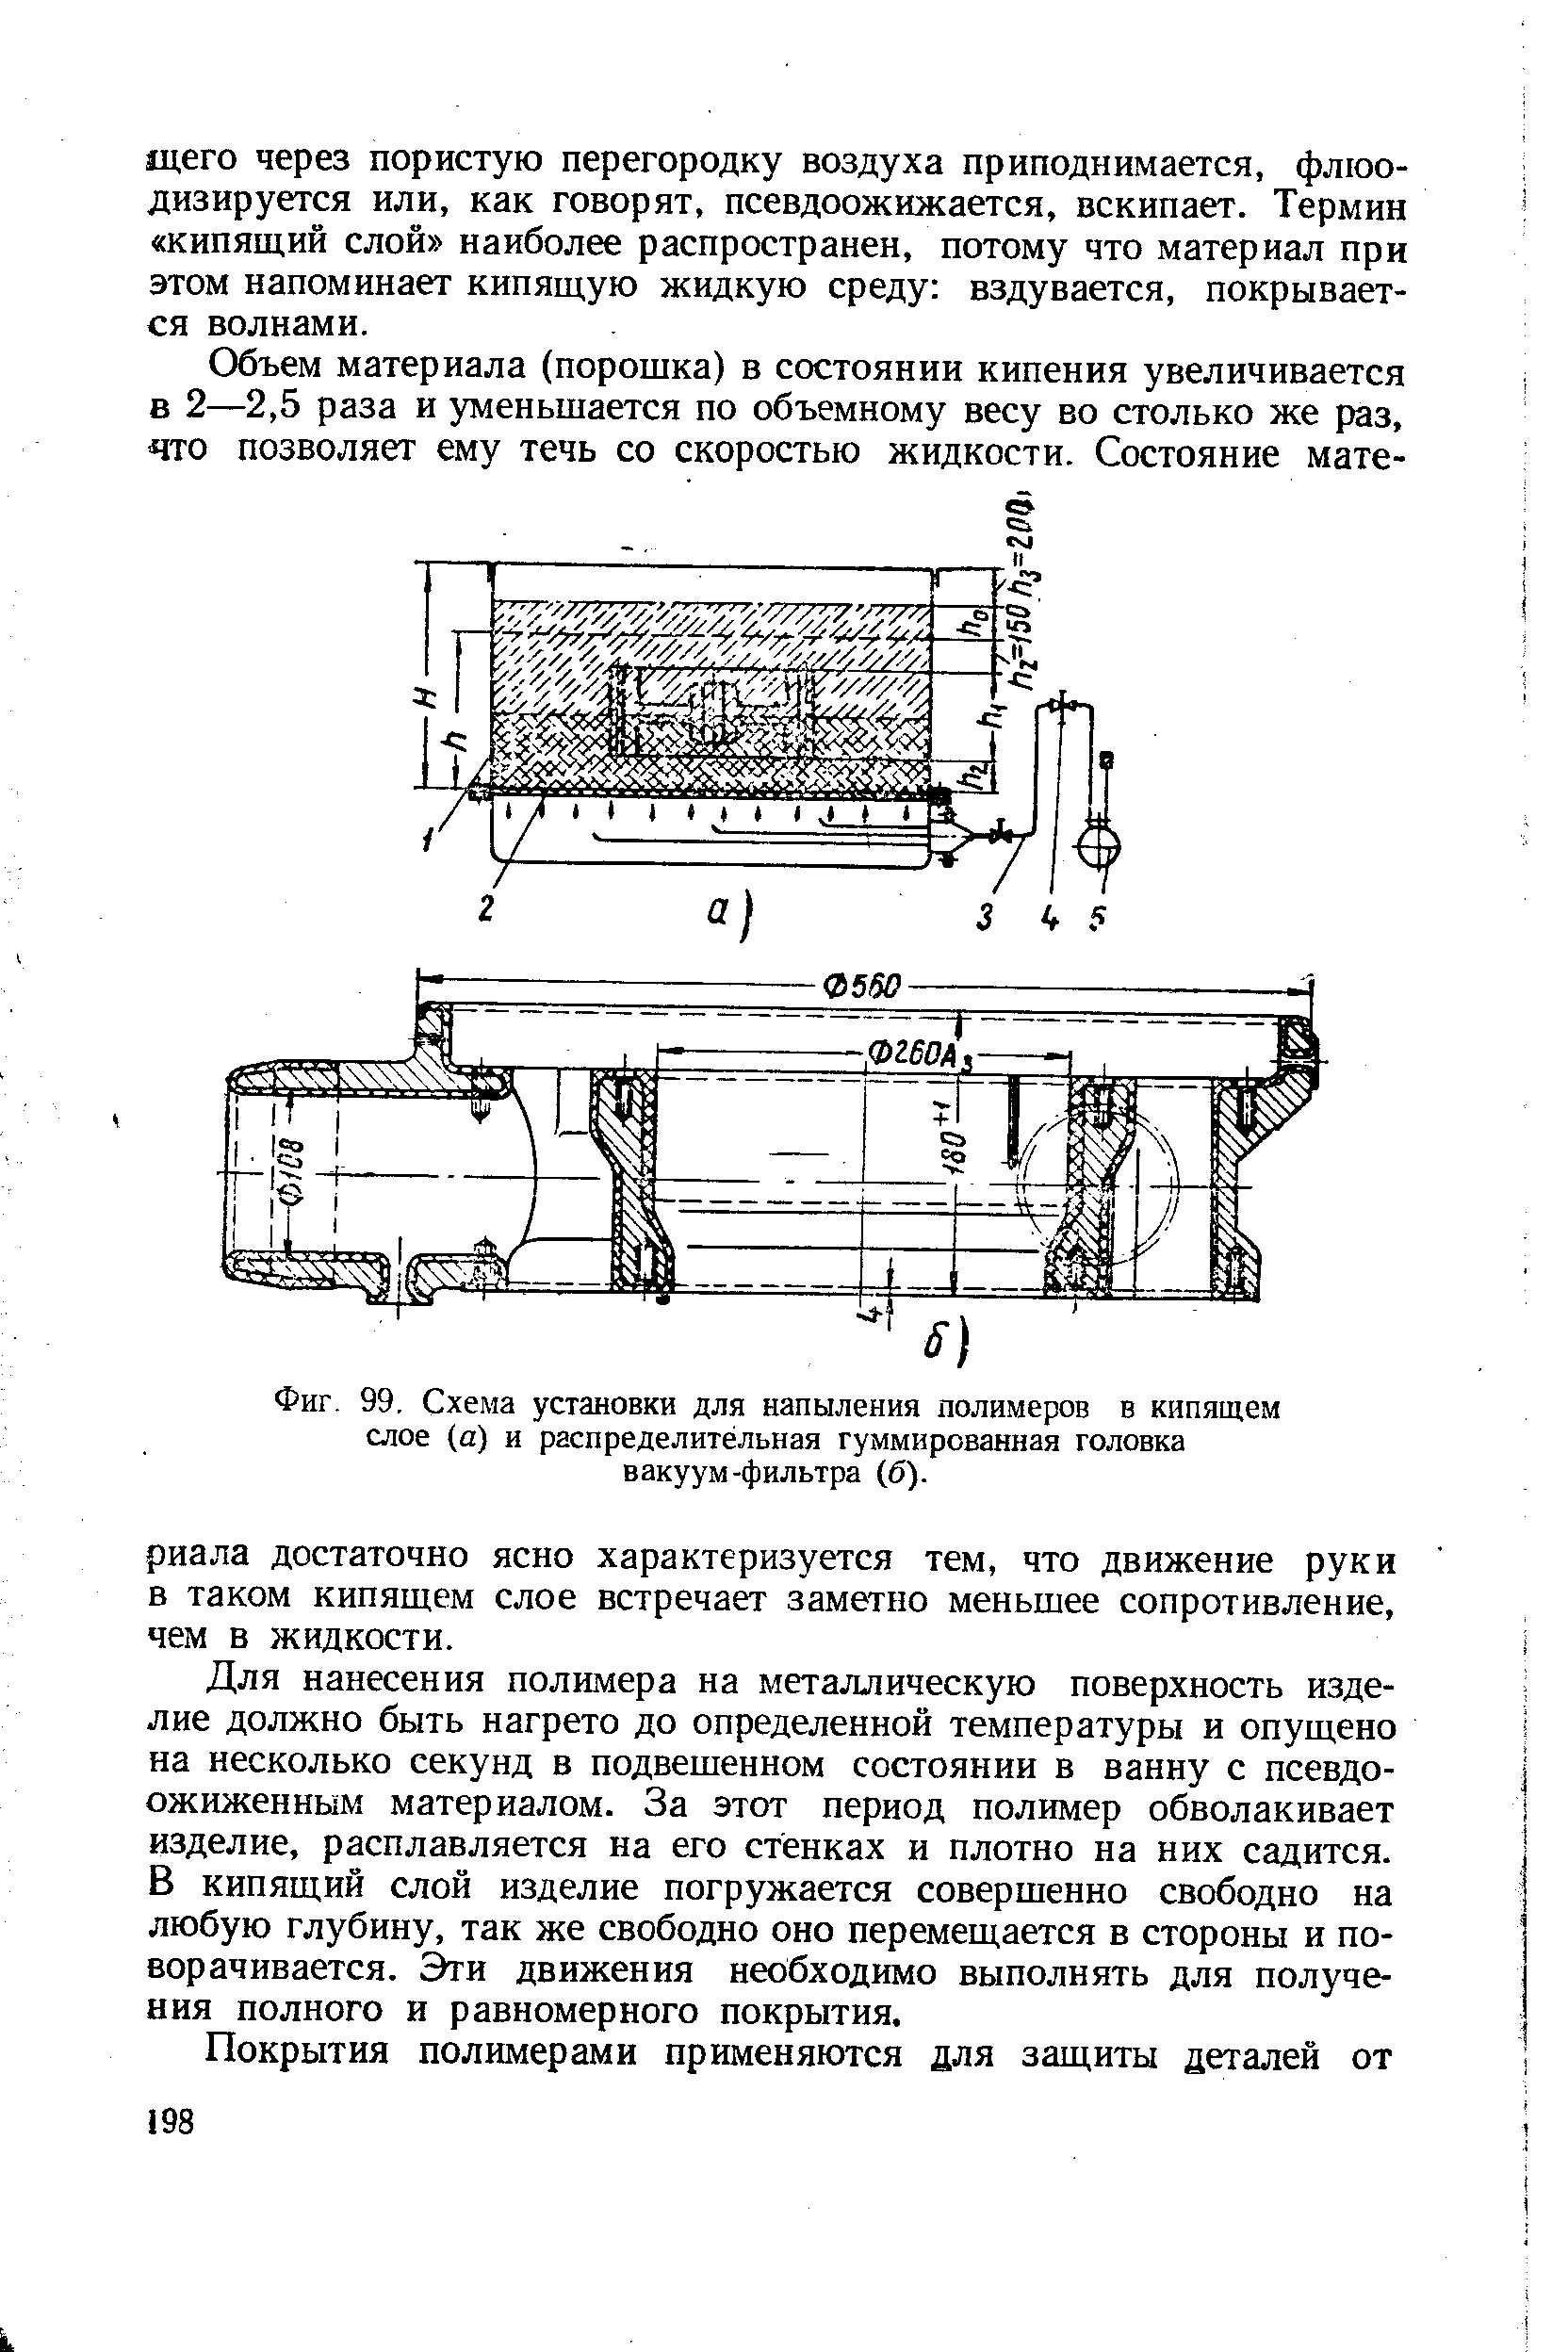 Фиг. 99, Схема установки для напыления полимеров в кипящем слое (а) и распределительная гуммированная головка вакуум-фильтра (б).
